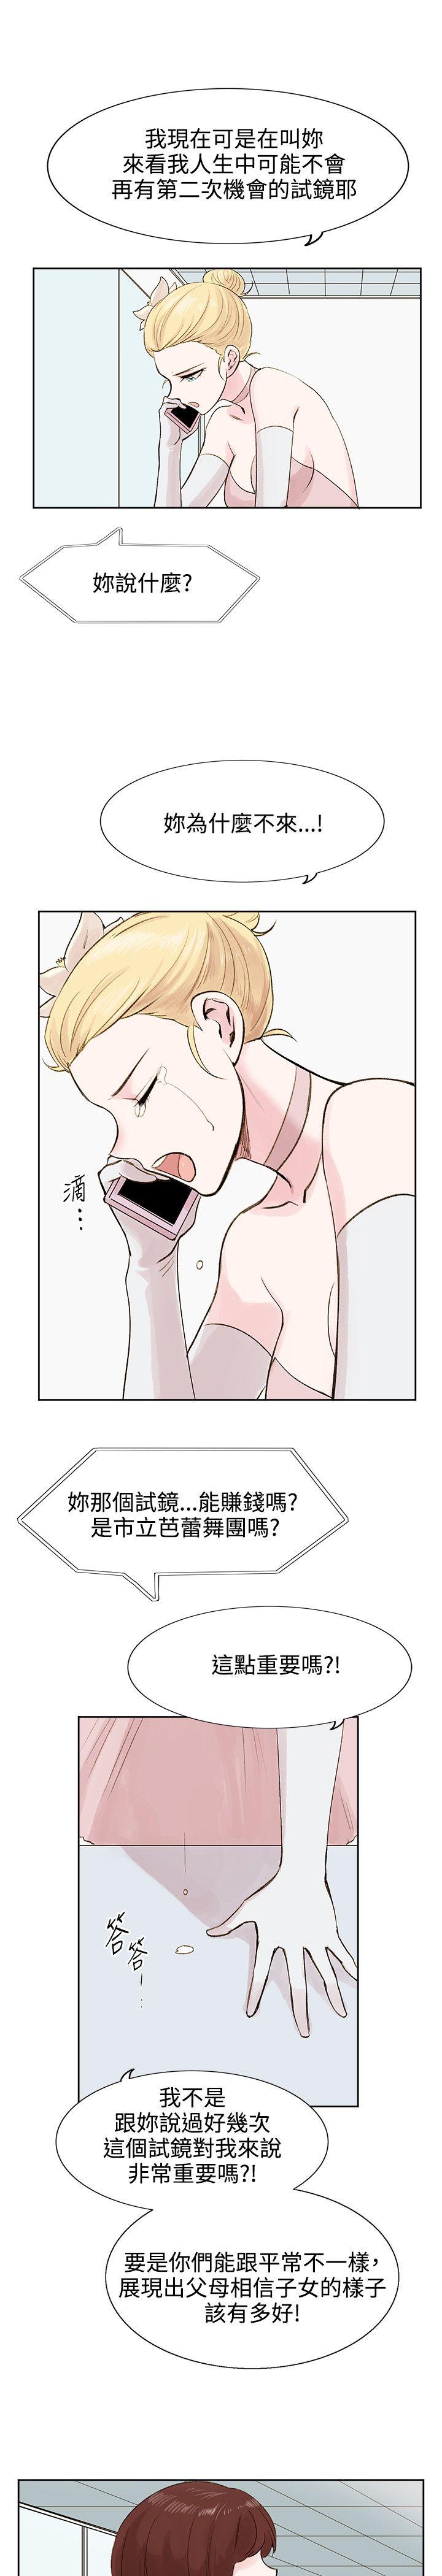 韩国污漫画 合理懷疑 第5话 19